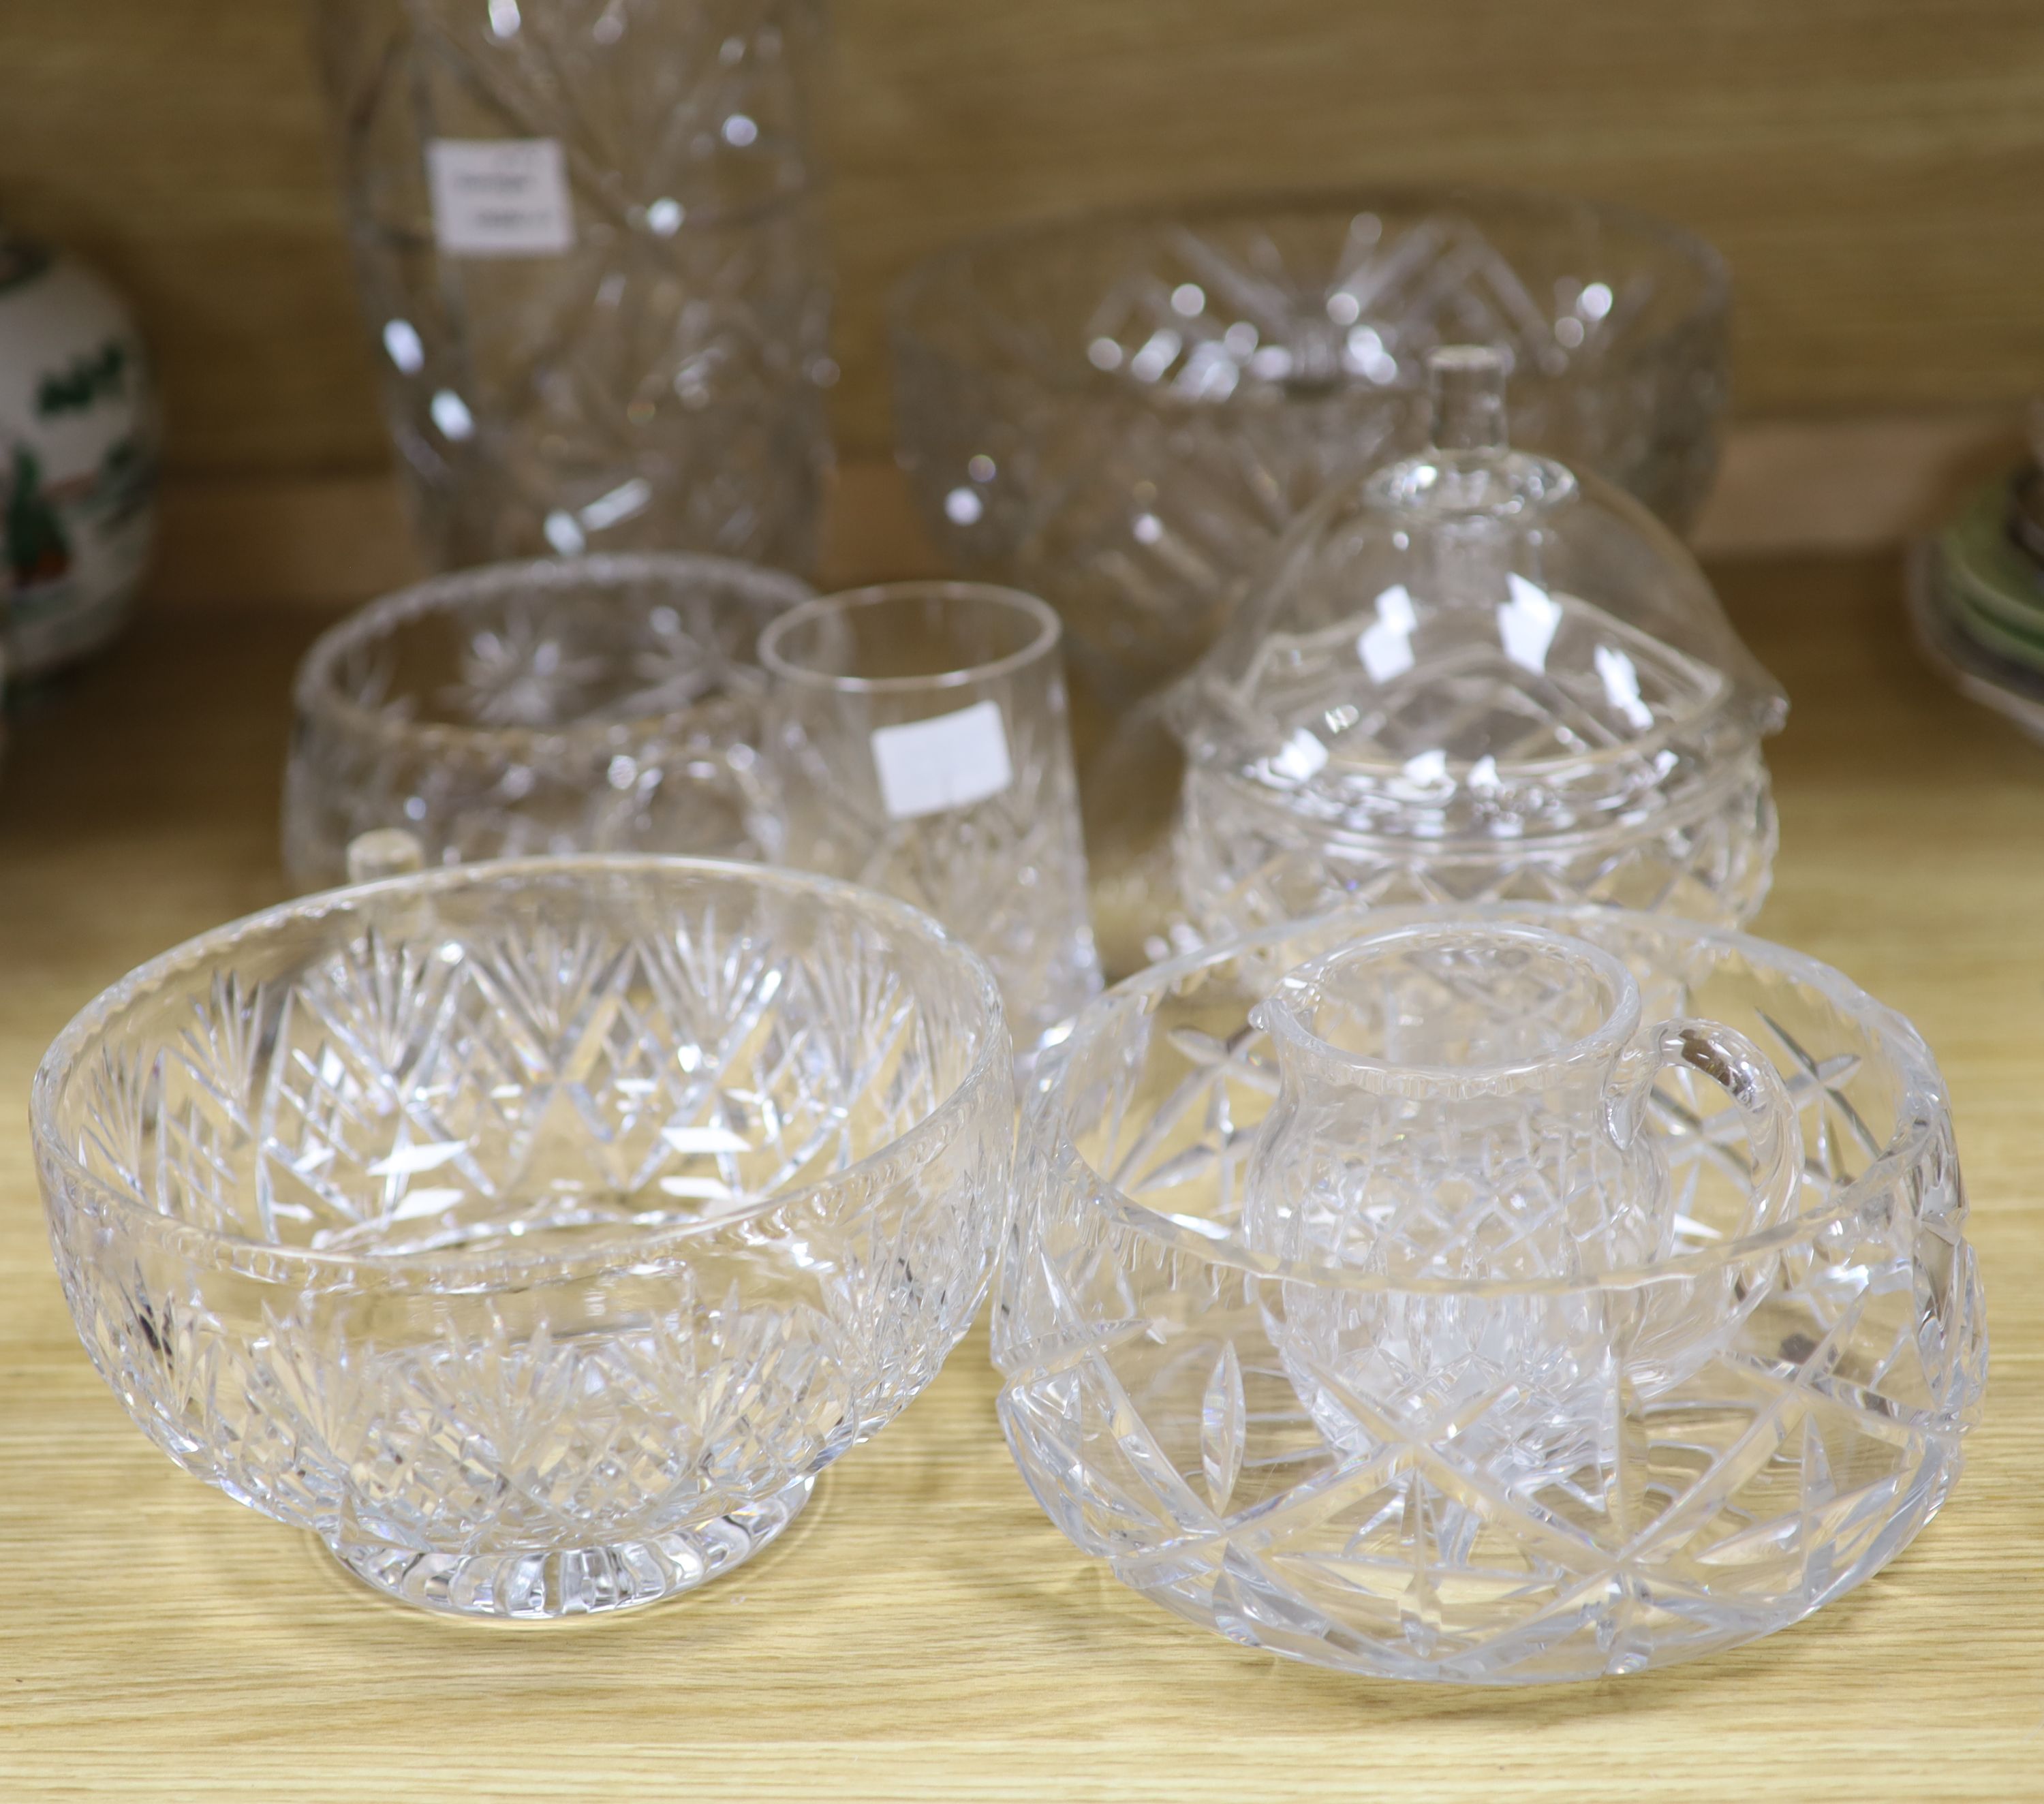 A small quantity of glassware